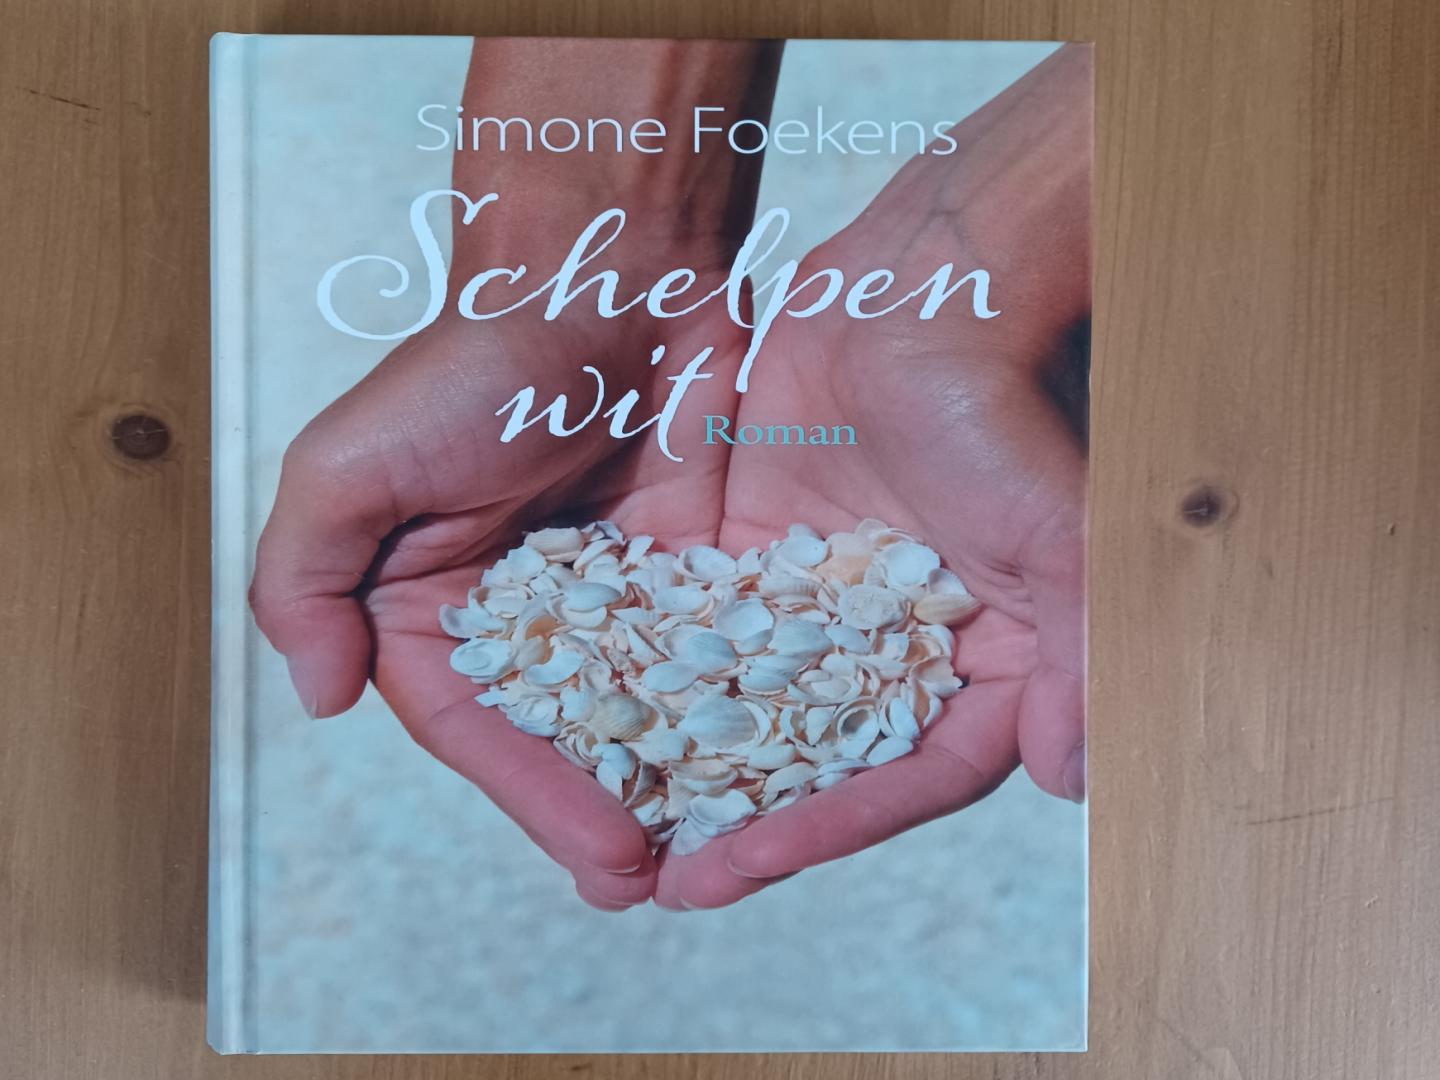 Foekens, Simone - Schelpenwit